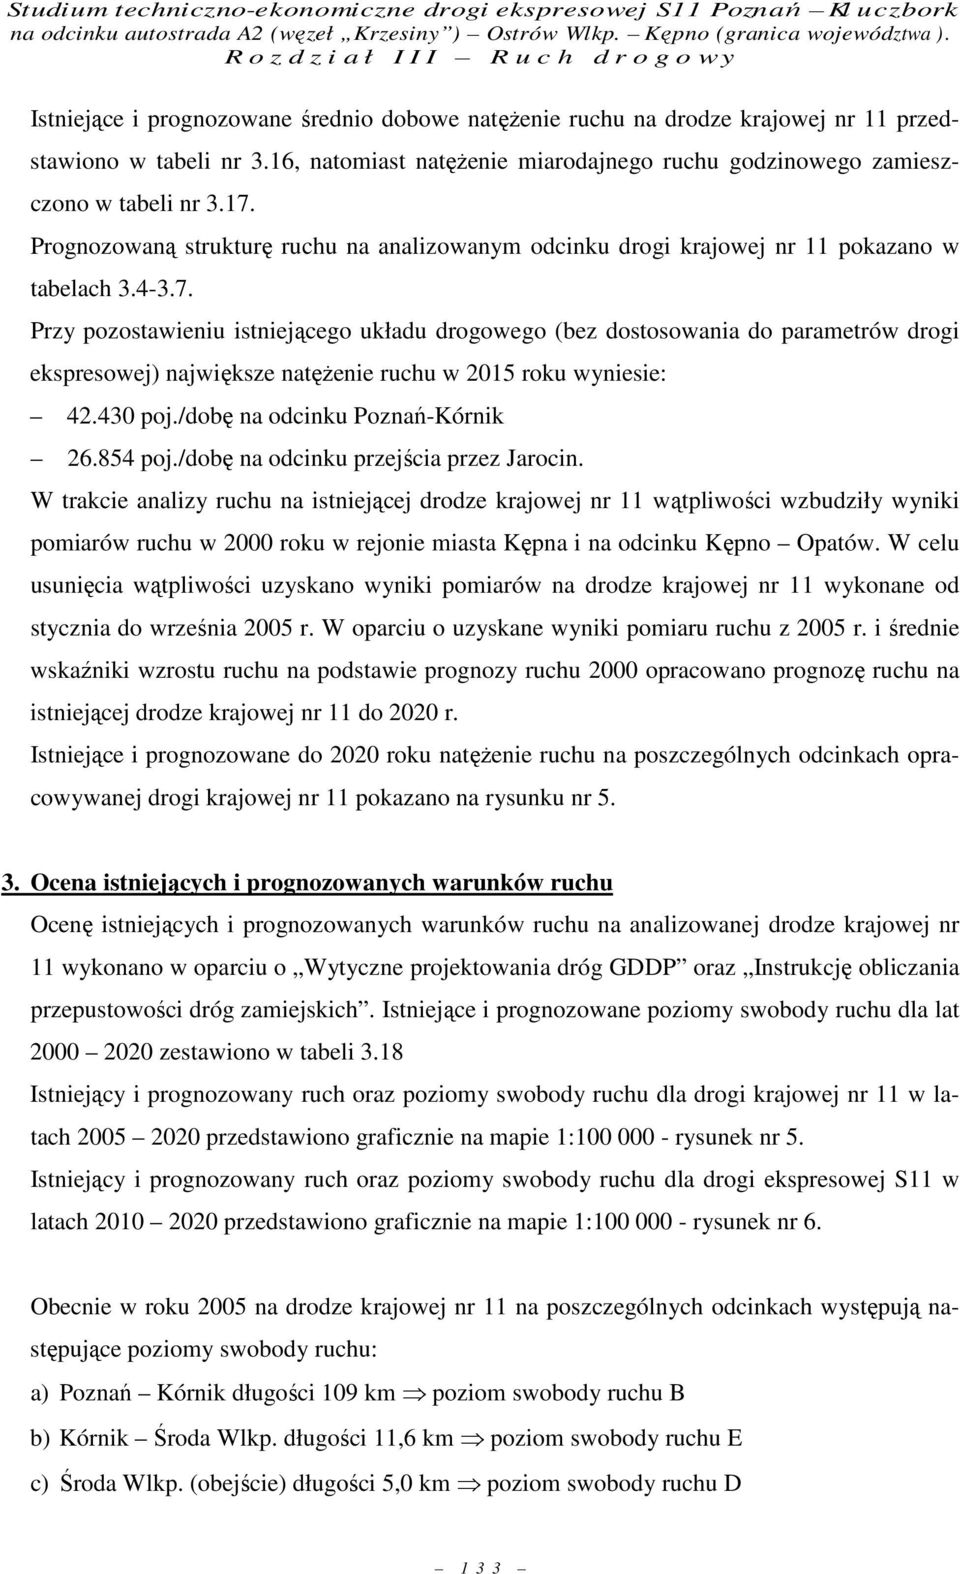 Przy pozostawieniu istniejącego układu drogowego (bez dostosowania do parametrów drogi ekspresowej) największe natęŝenie ruchu w 2015 roku wyniesie: 42.430 poj./dobę na odcinku Poznań-Kórnik 26.